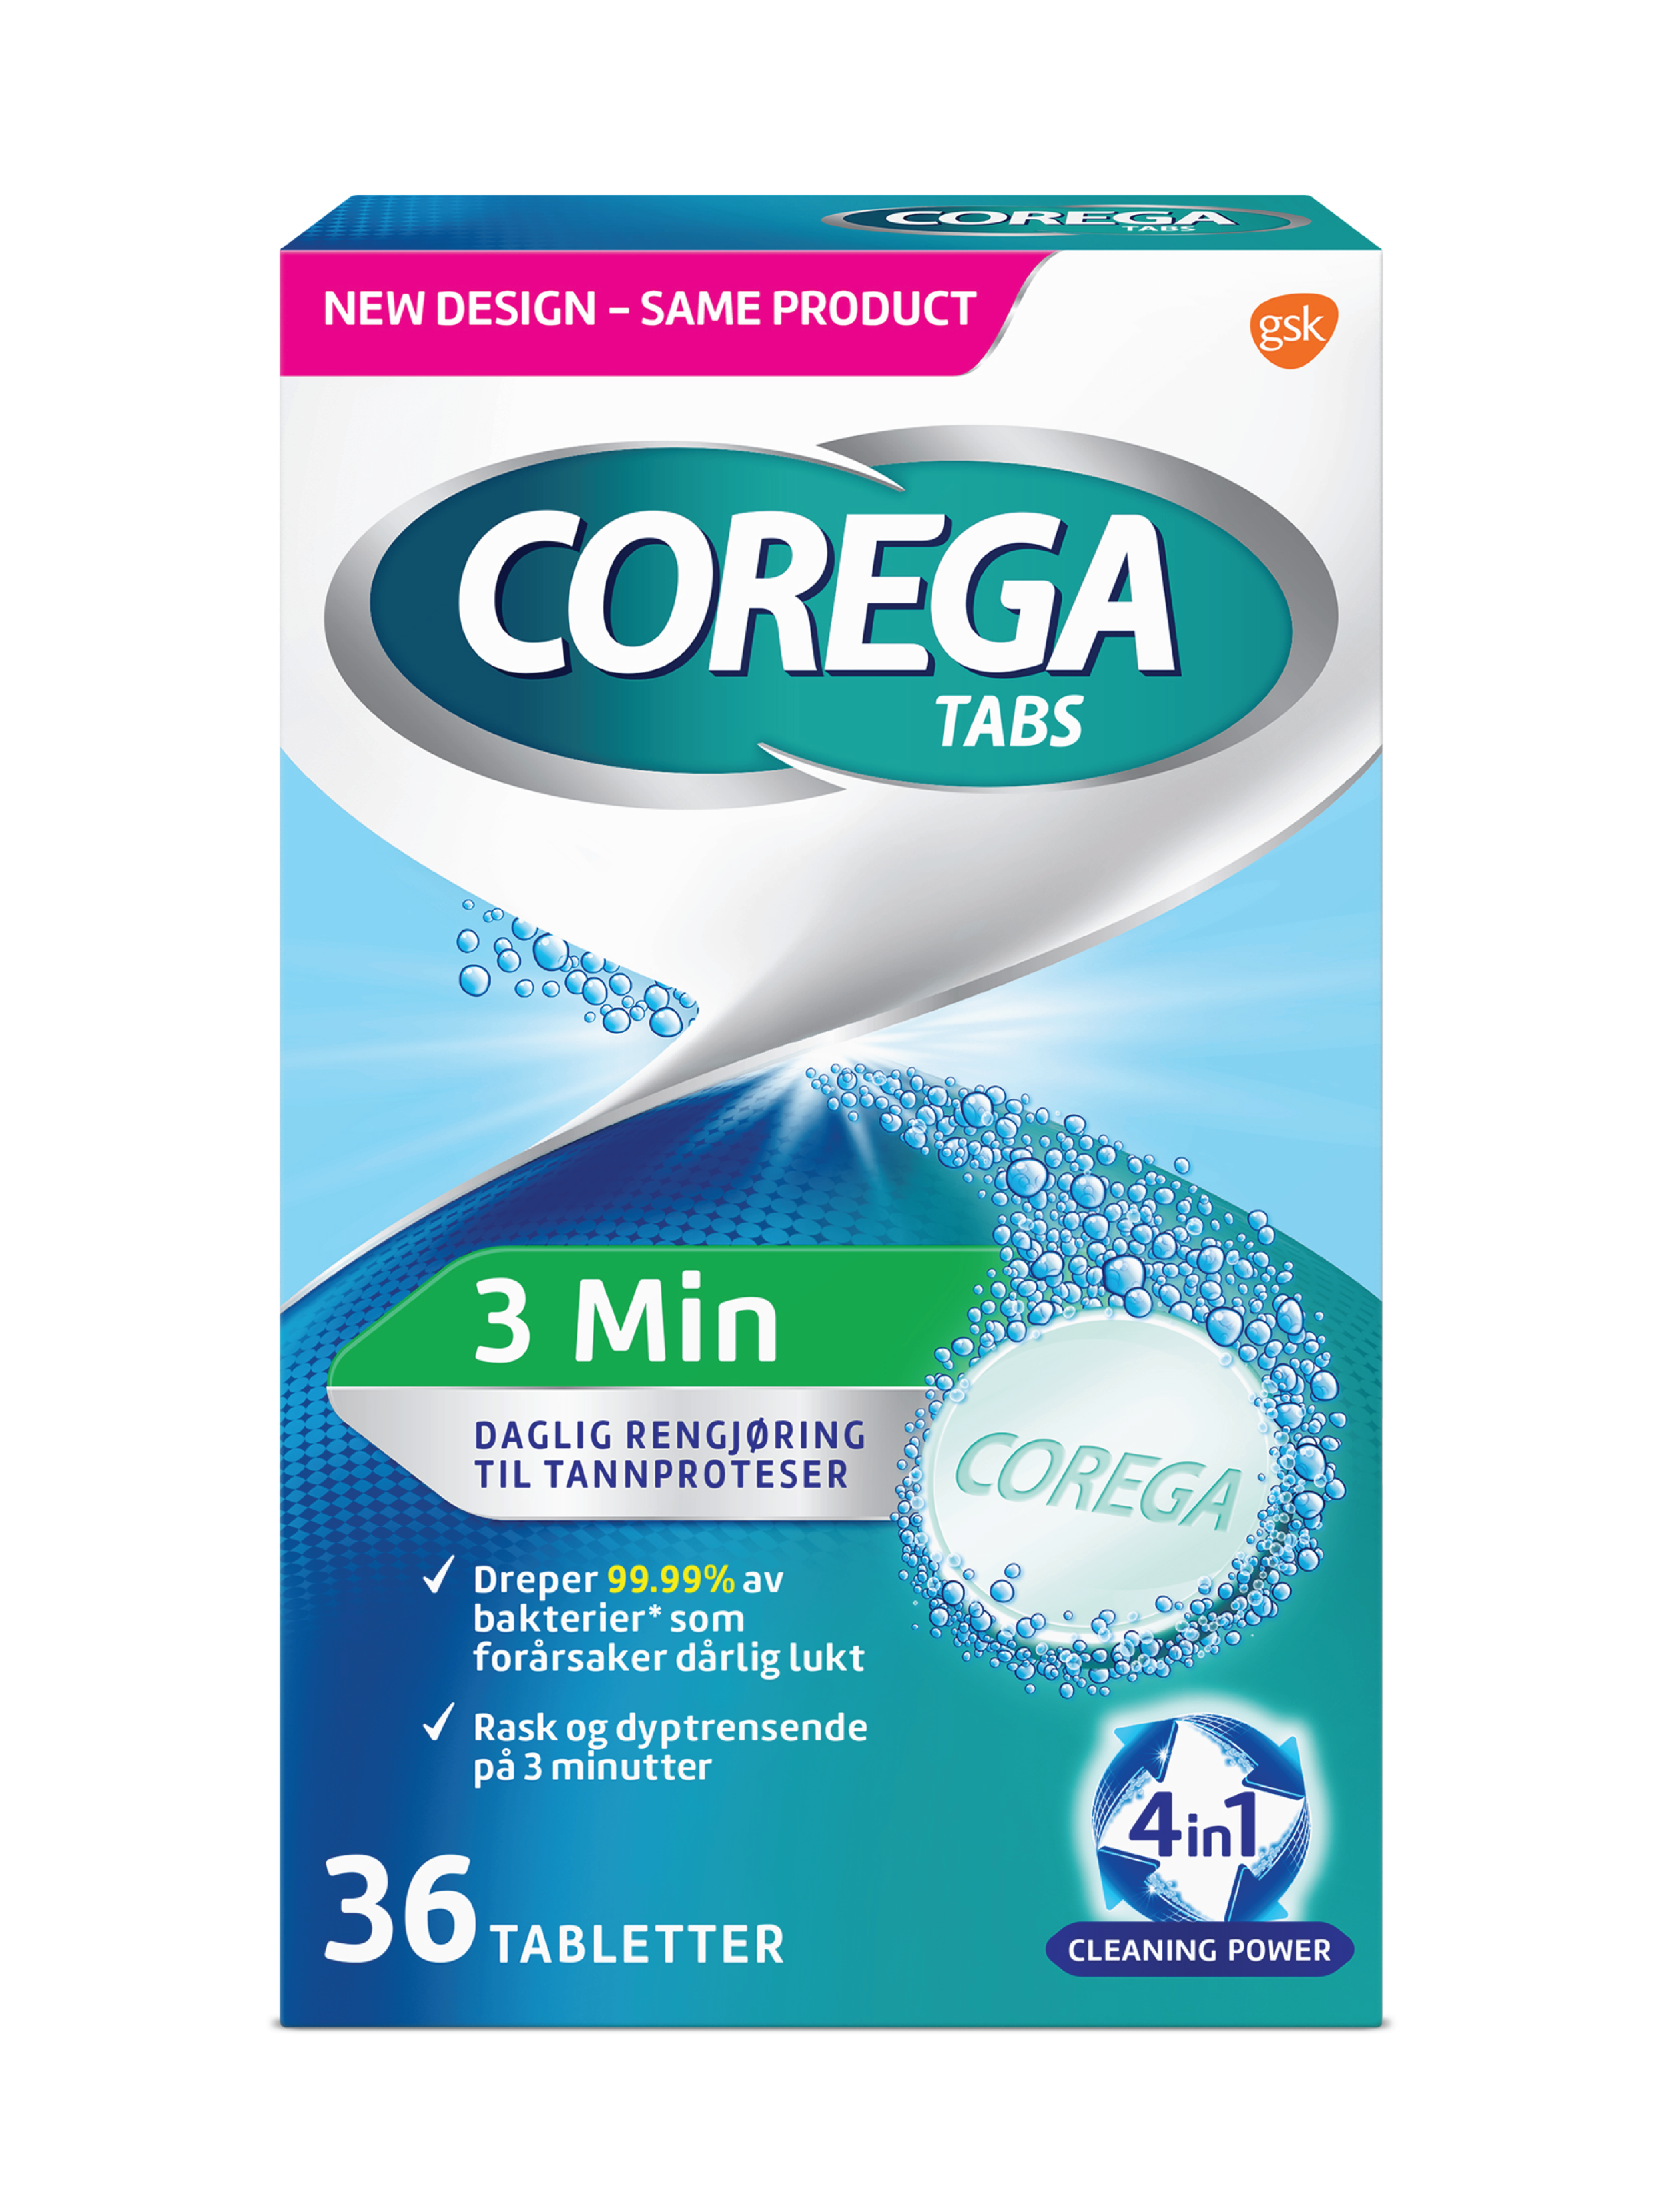 Corega Tabs 3 min rensetabletter, 36 tabletter